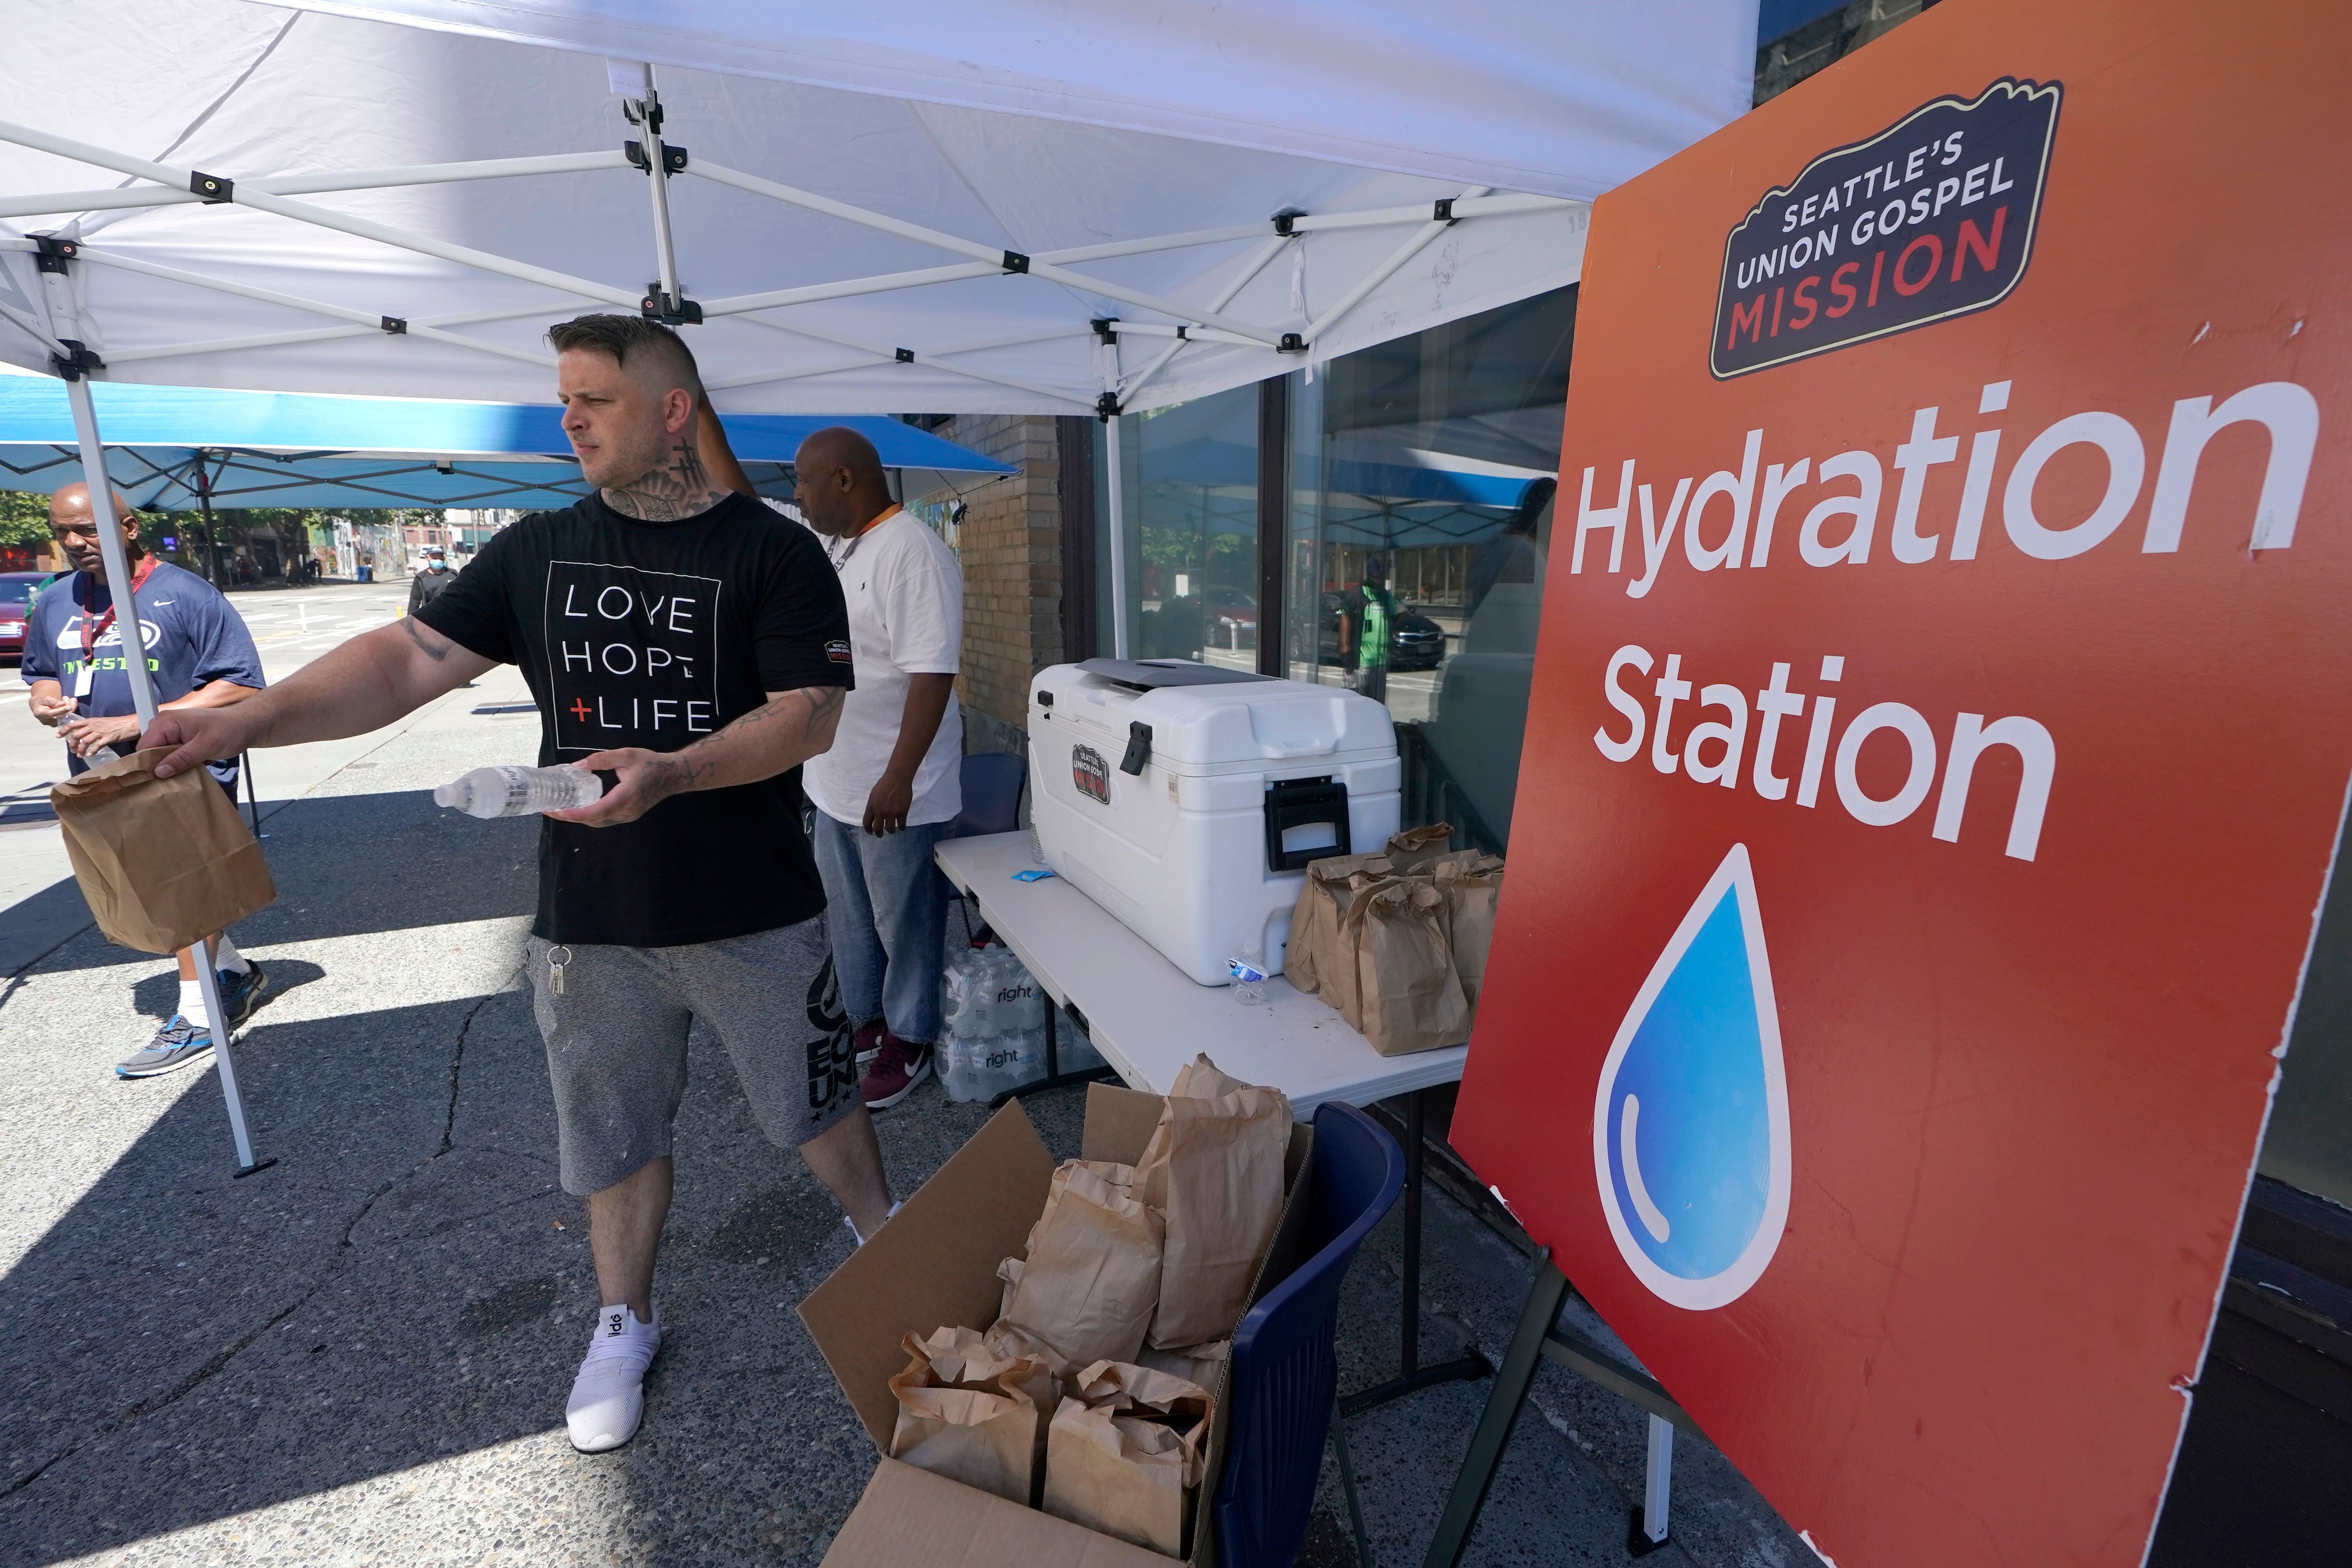 Distribuição de água e comida em um centro de hidratação na cidade norte-americana de Seattle.